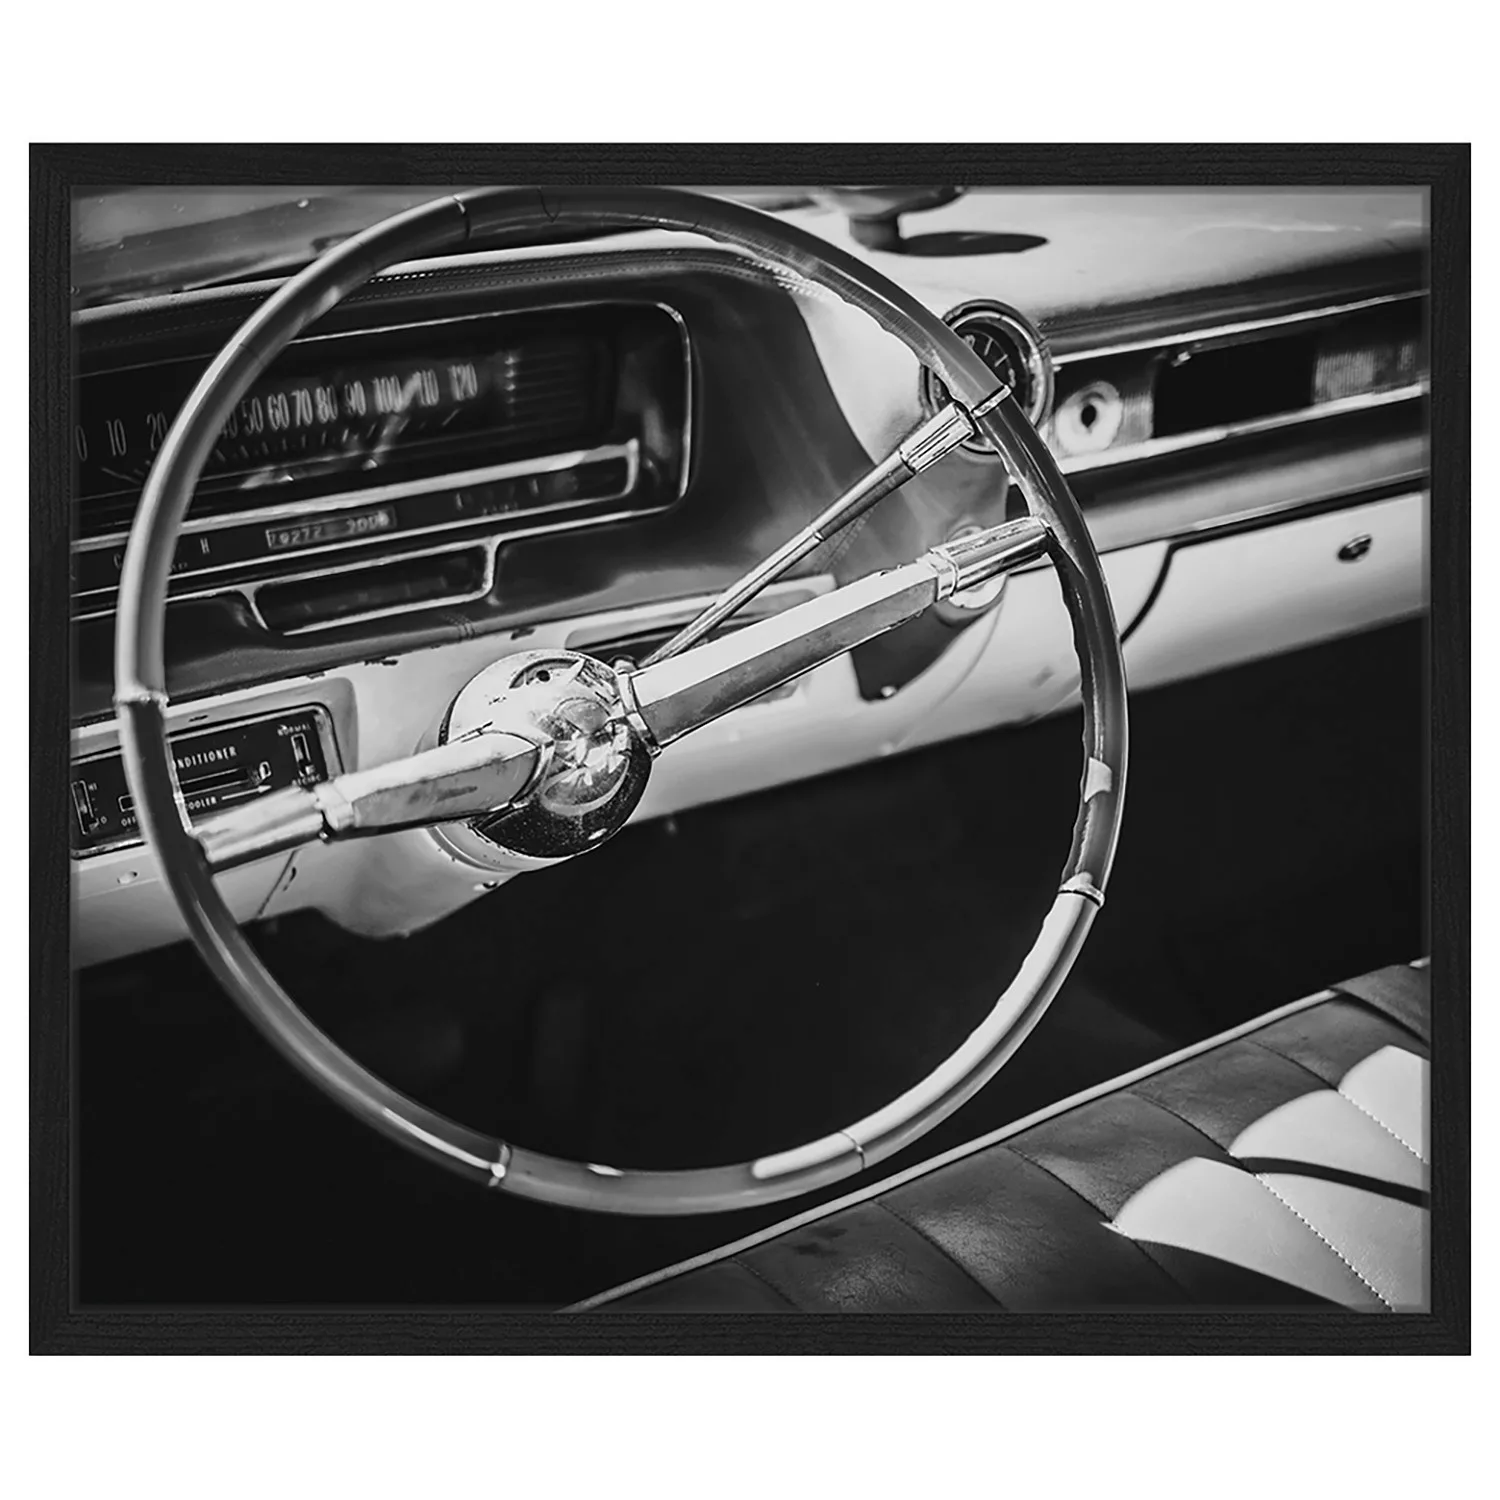 home24 Bild Steering wheel günstig online kaufen